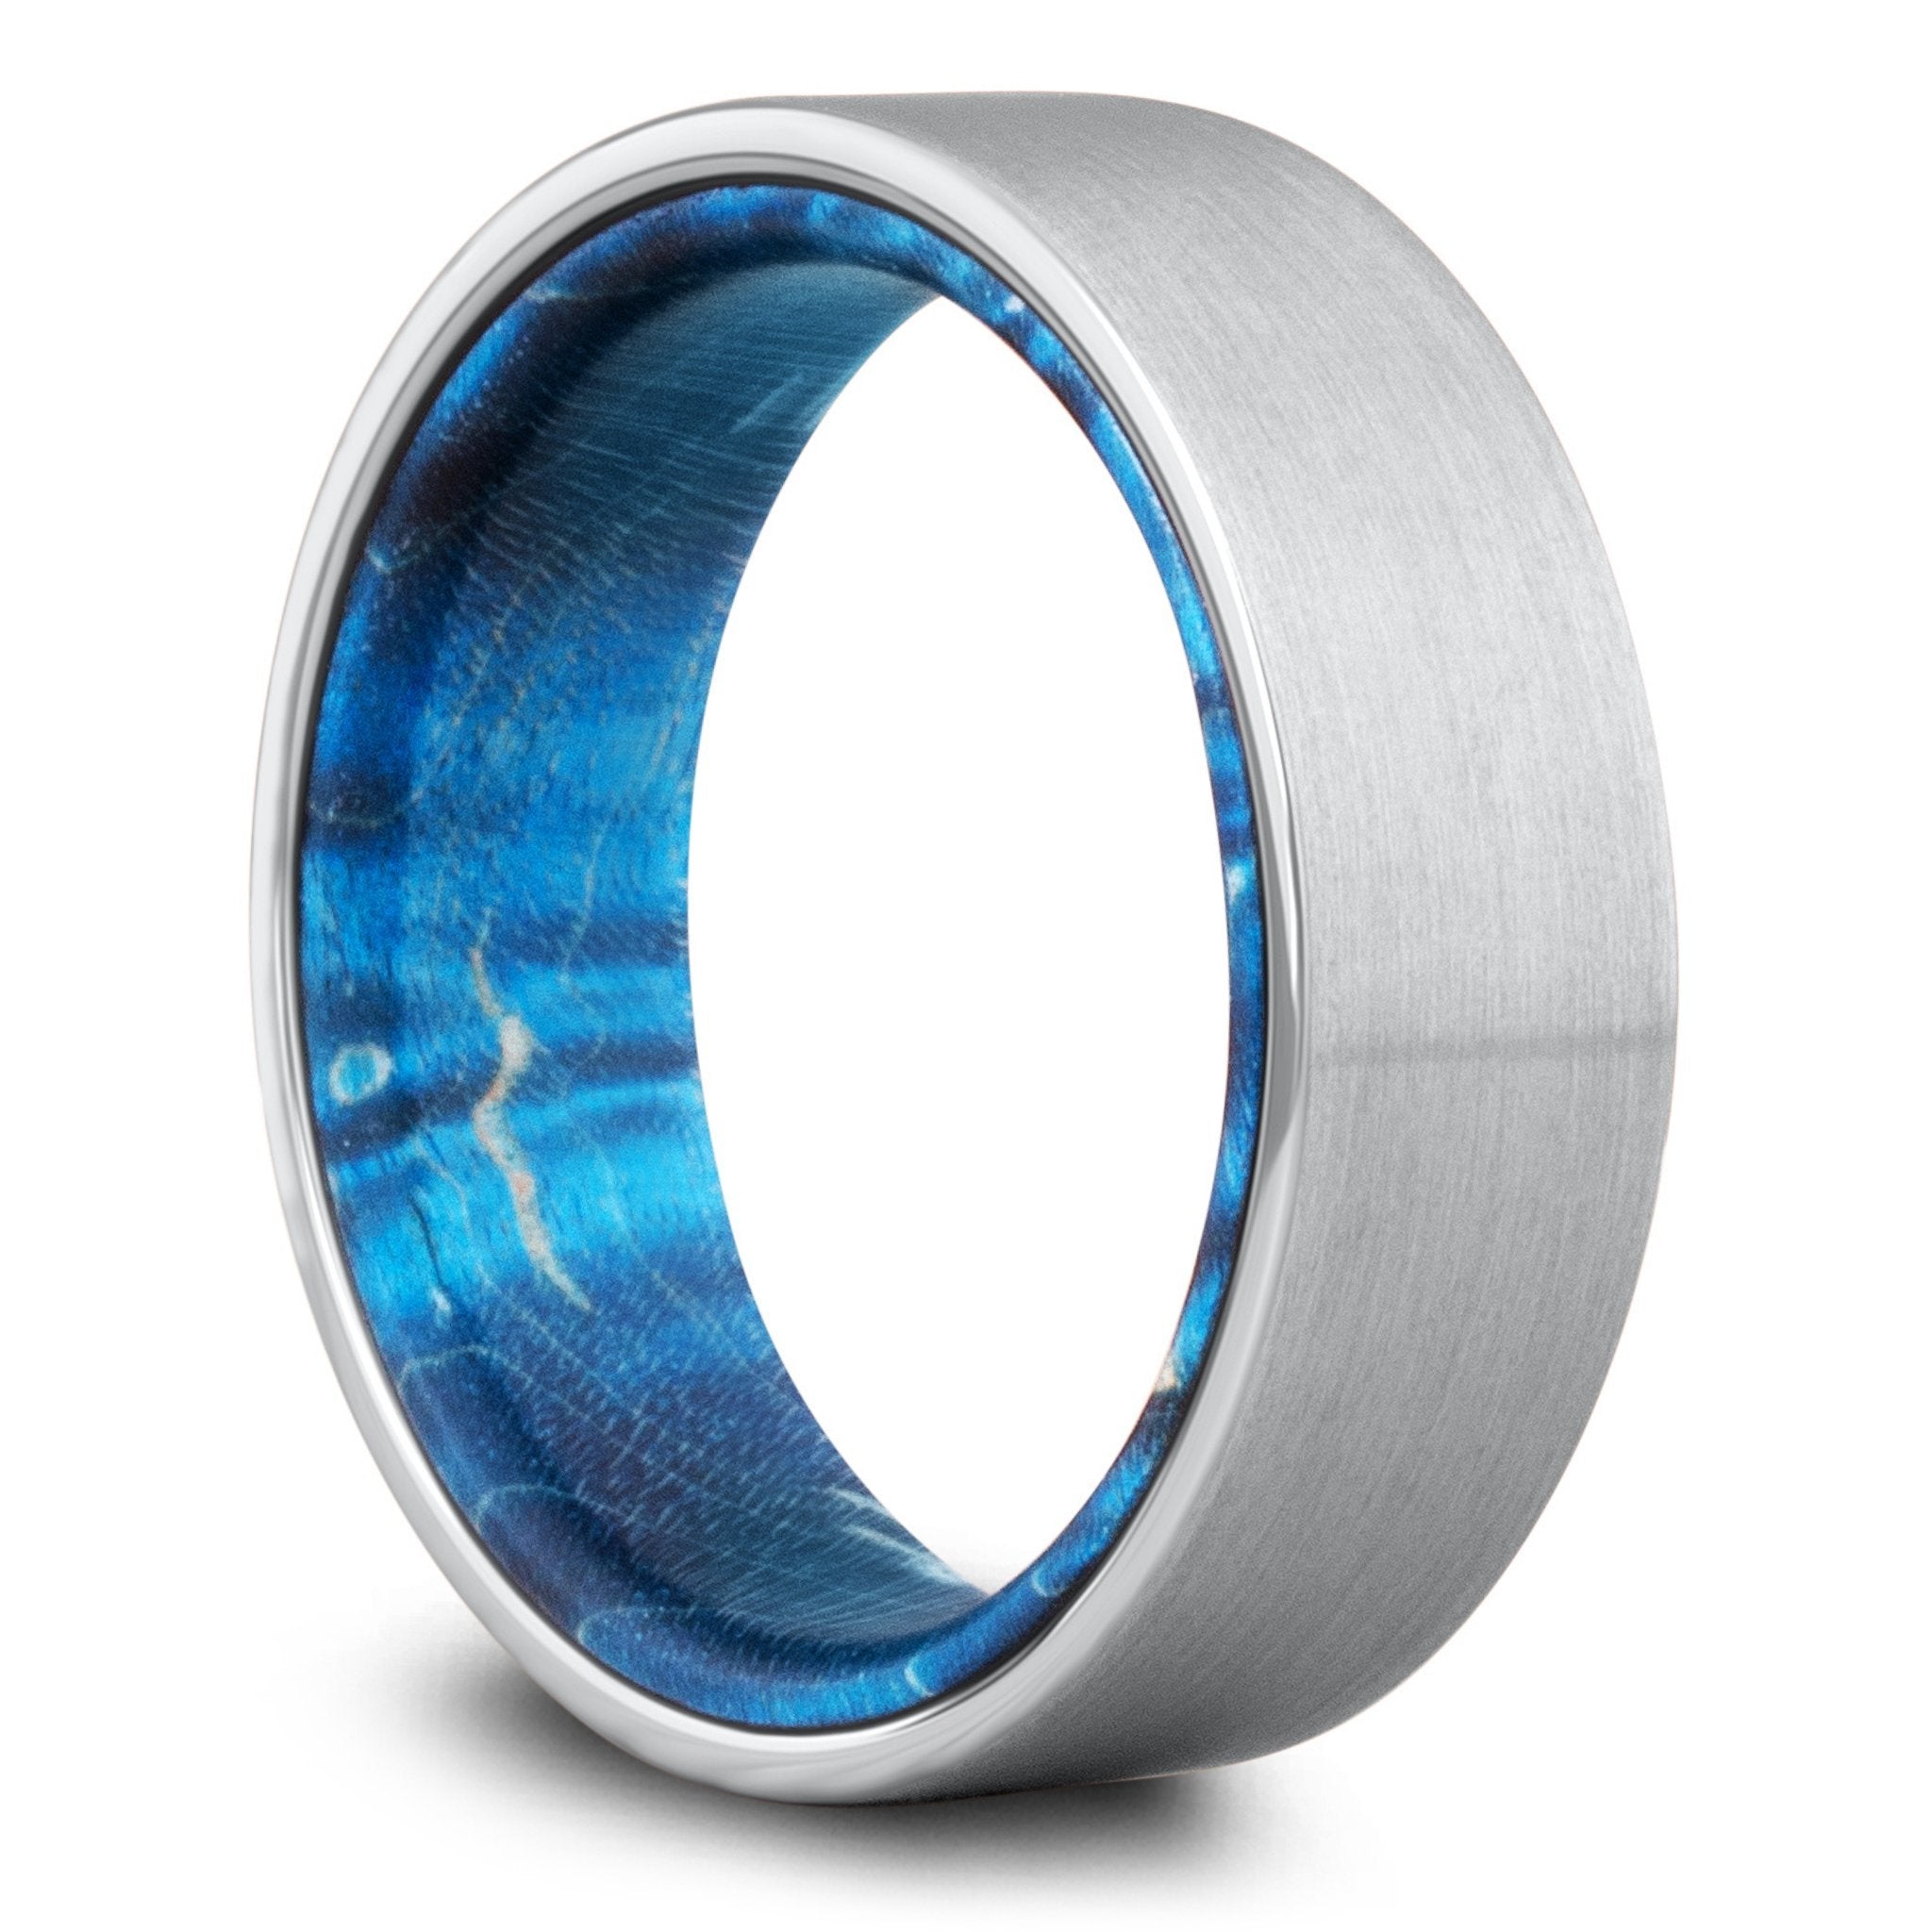 Ring Sizer Measuring Tool – Northern Royal, LLC